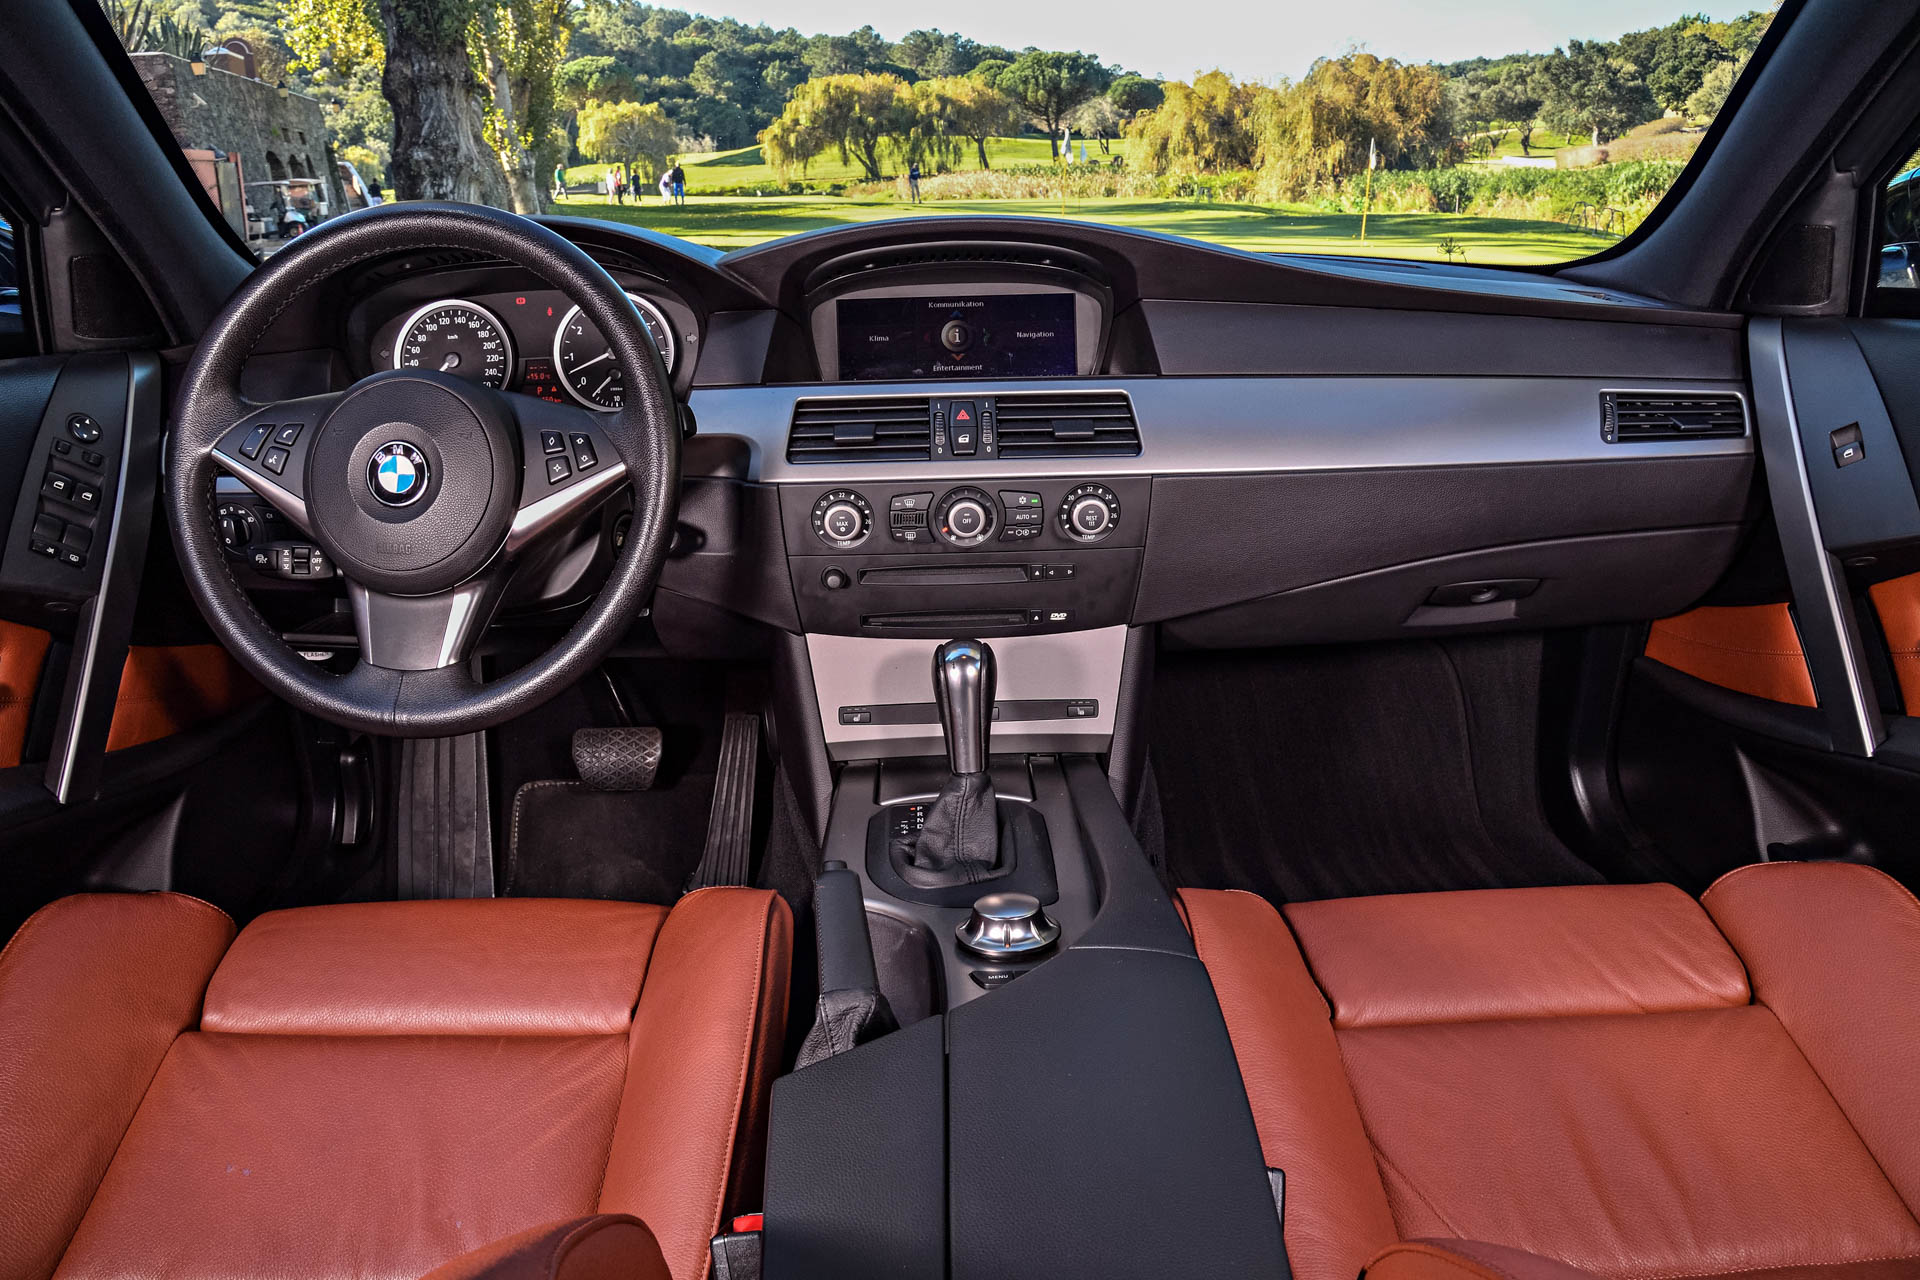 BMW E60 ///M5 Interior 5 Series (2003-2010)